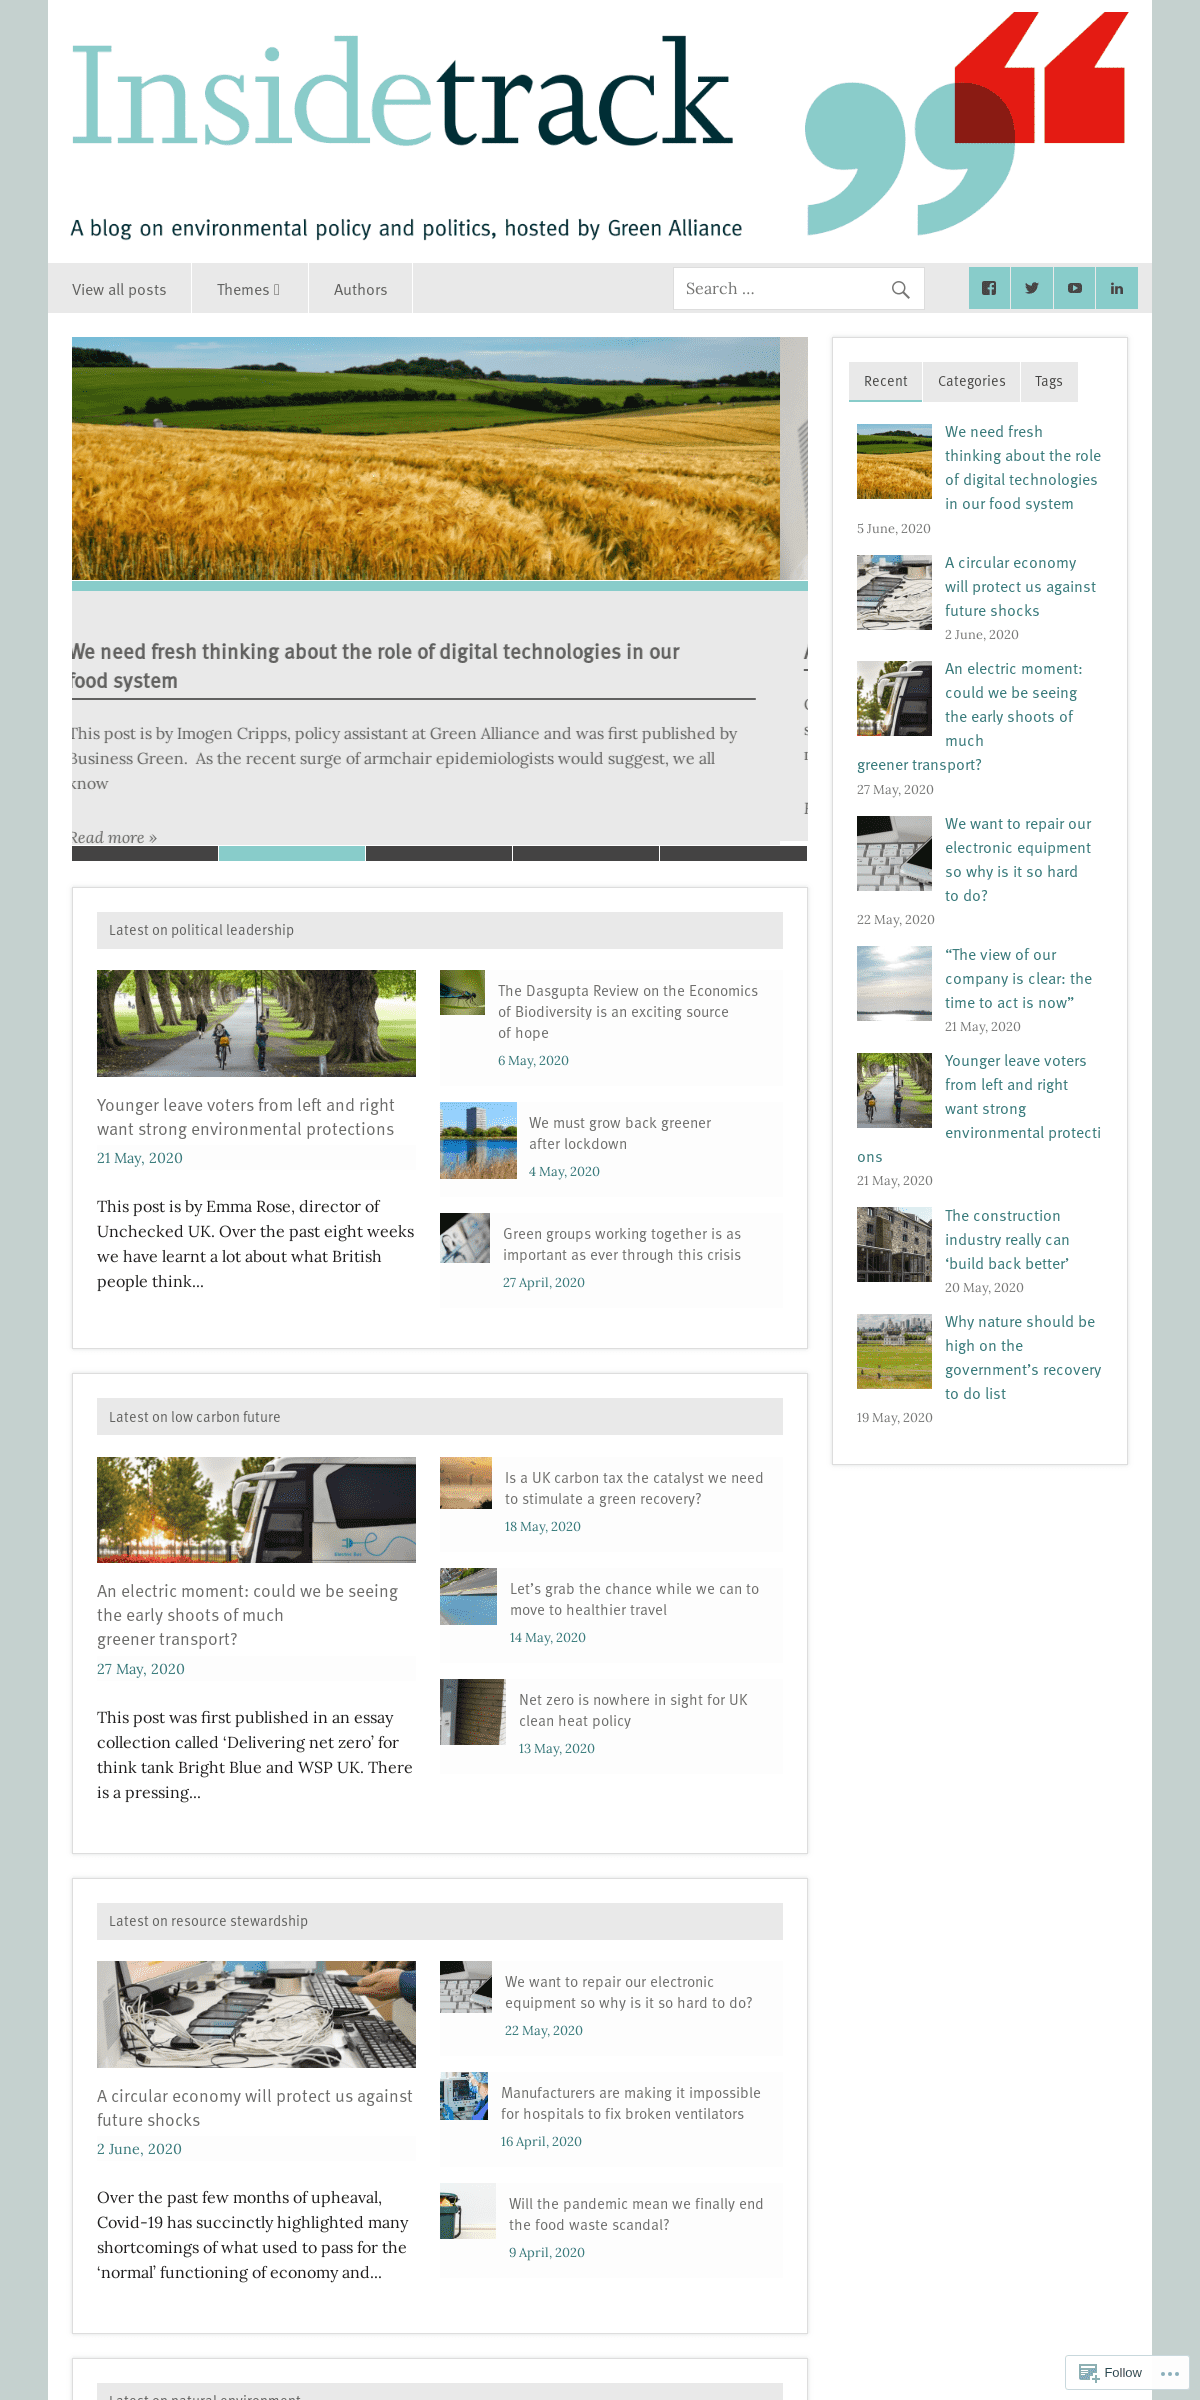 A complete backup of greenallianceblog.org.uk